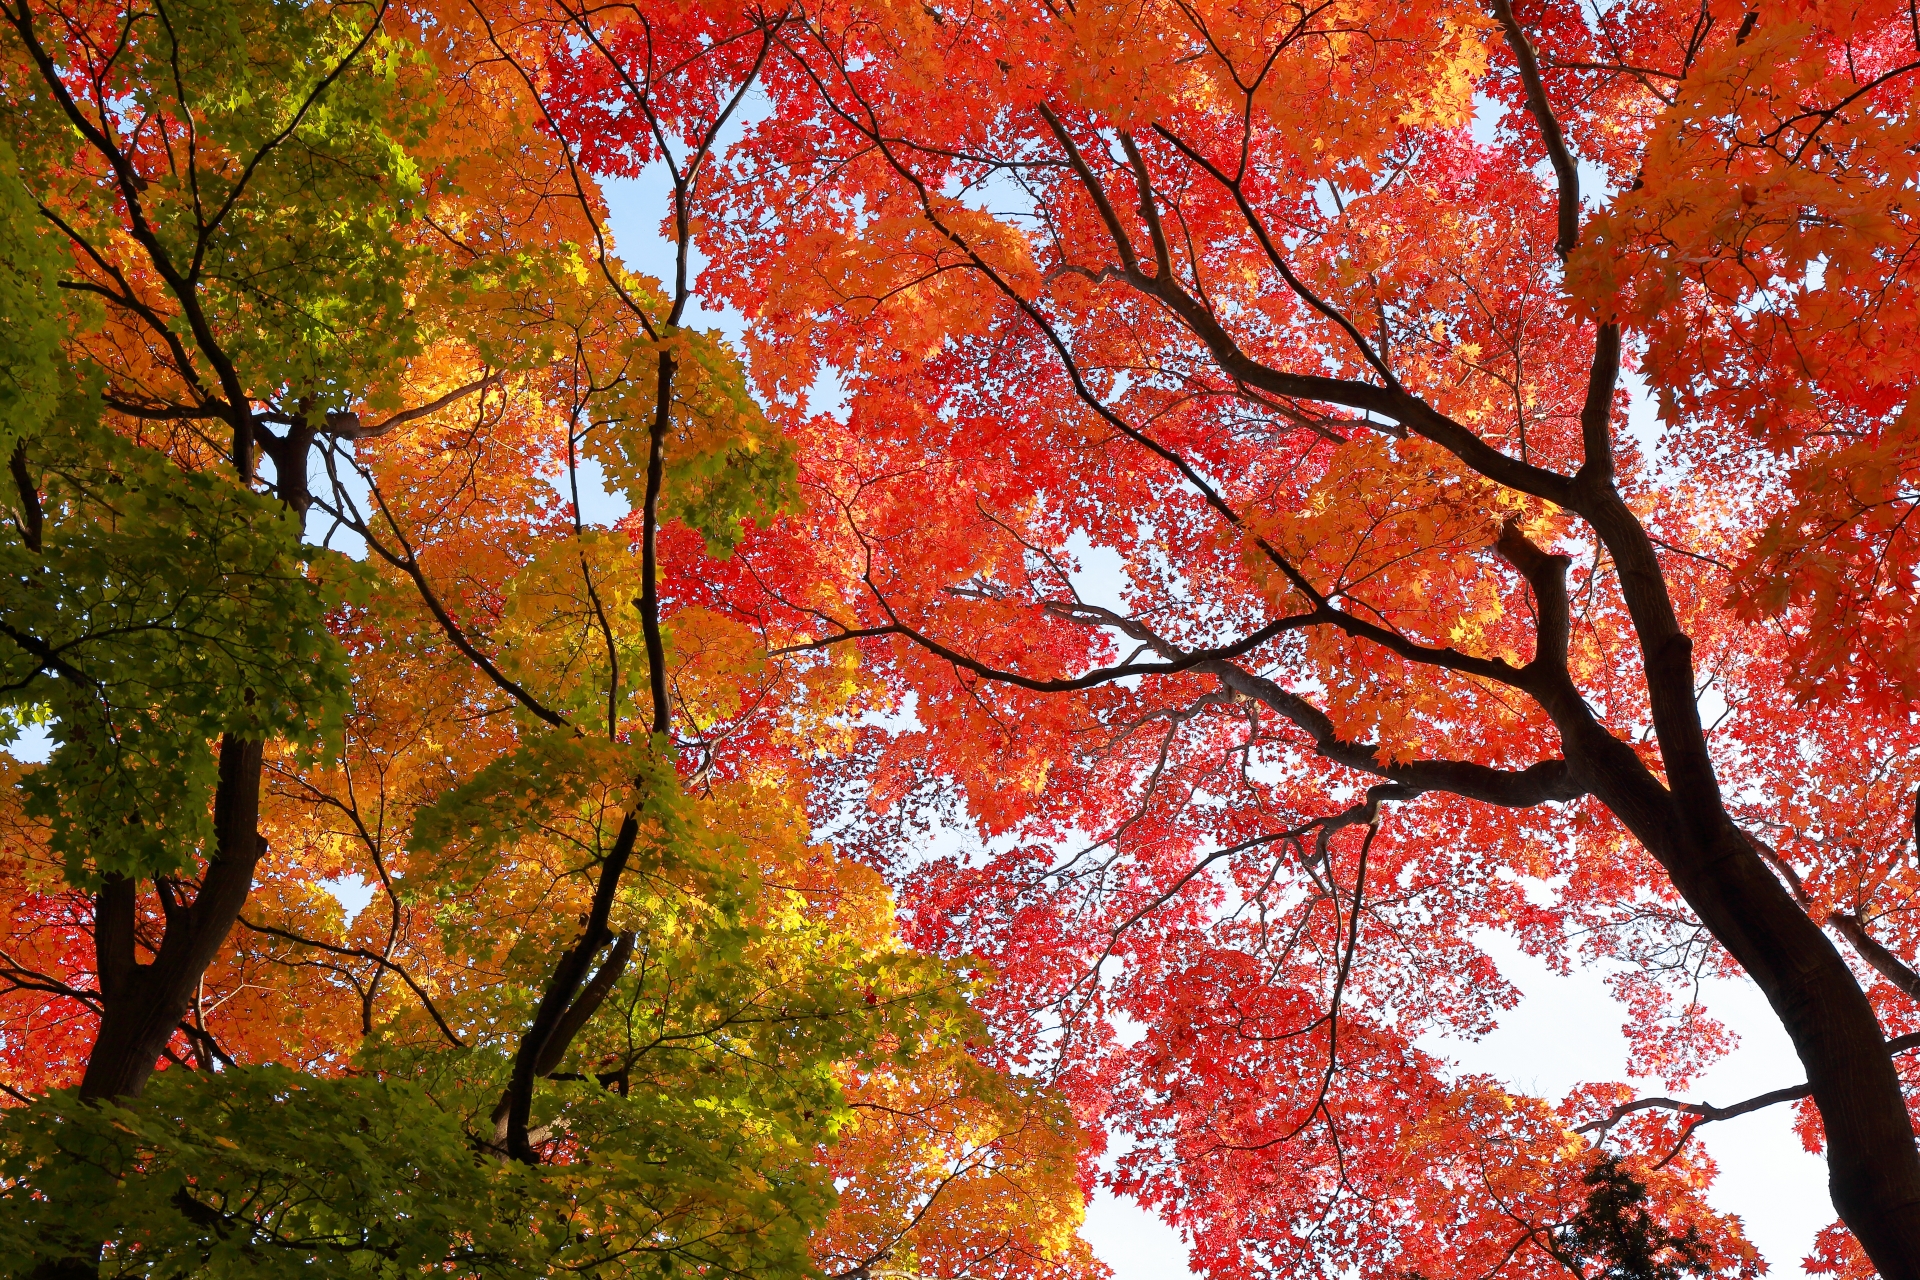 葛根田渓谷で紅葉もみじ狩り 色彩のコントラストに注目 情報発信ブログサイト Blue Rose